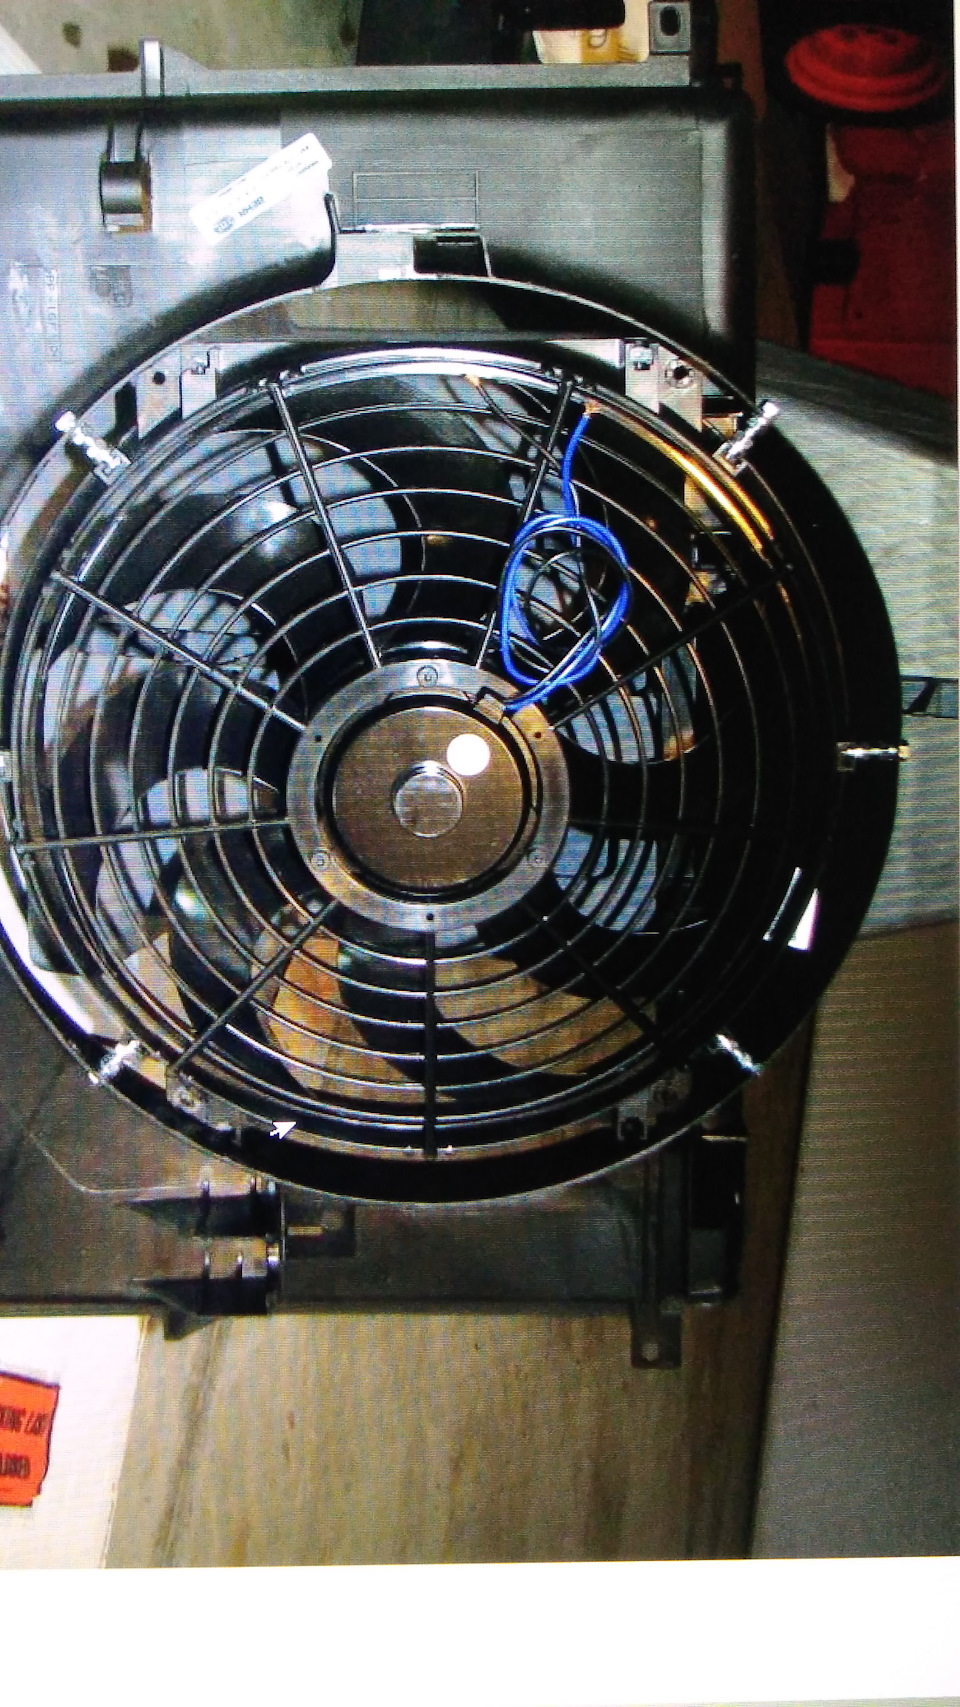 Центробежный вентилятор своими руками | Доска активности, Водопроводные трубы, Изобретения